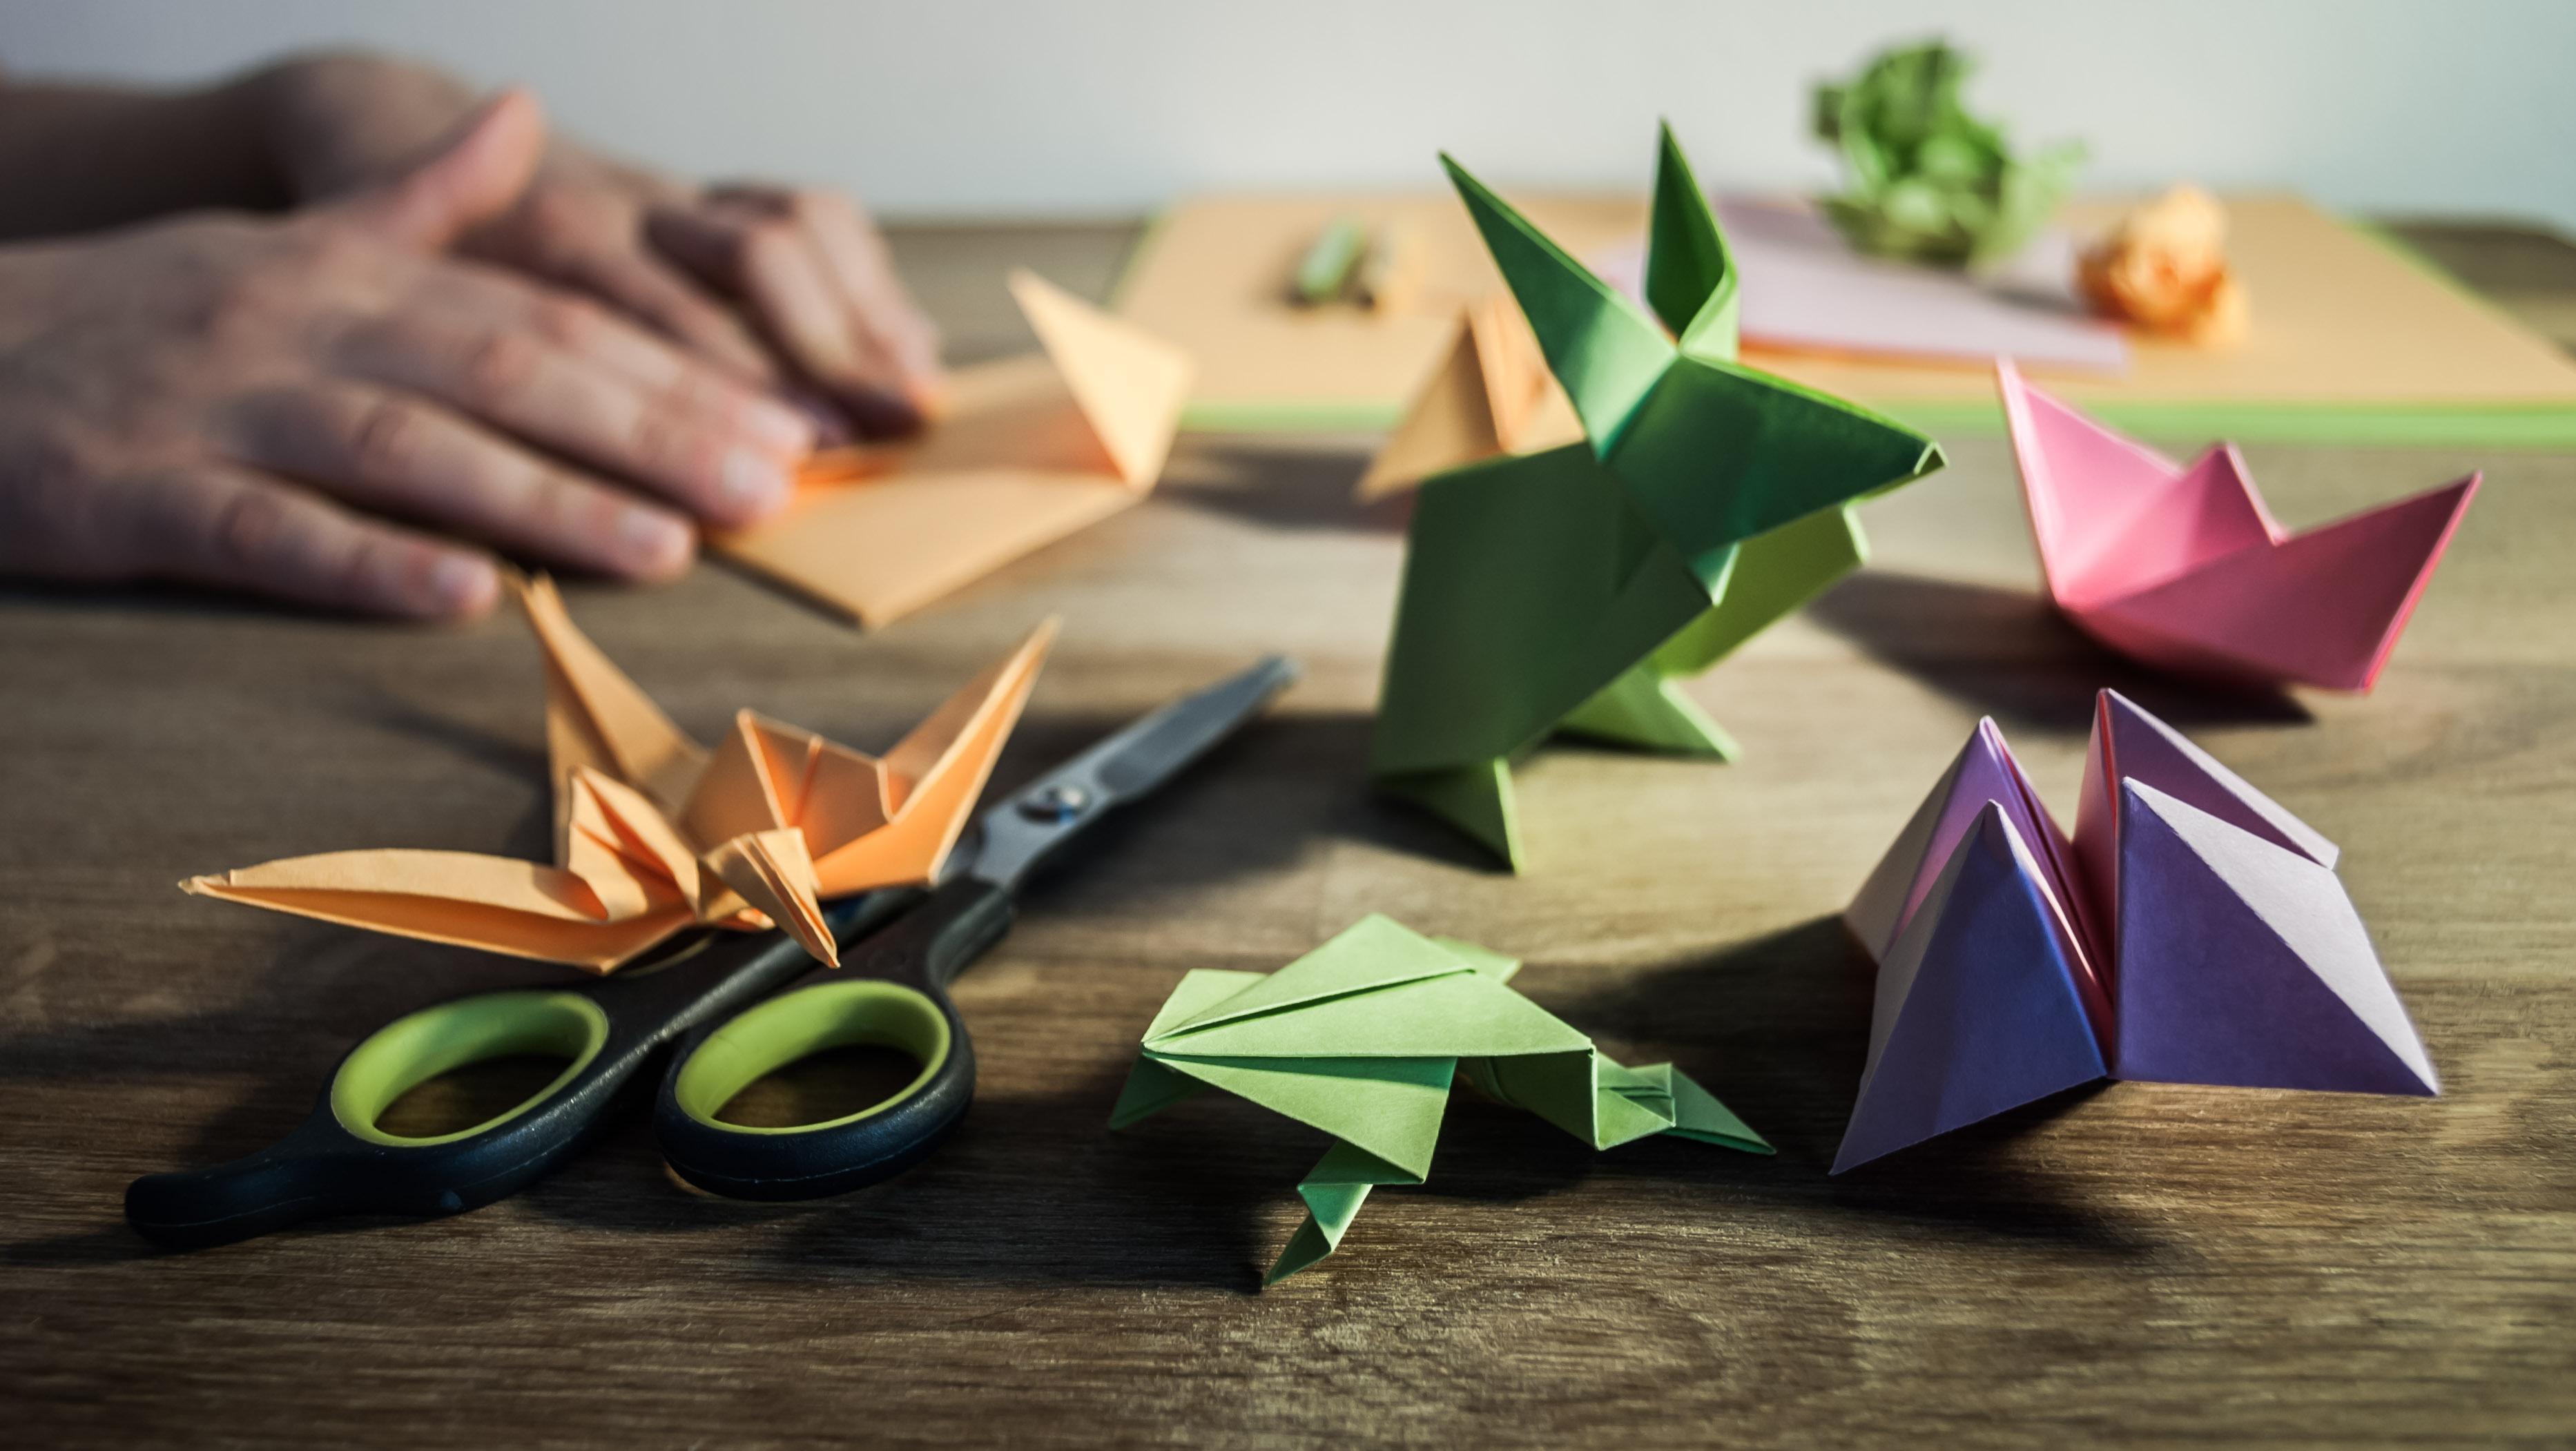 buku origami free download